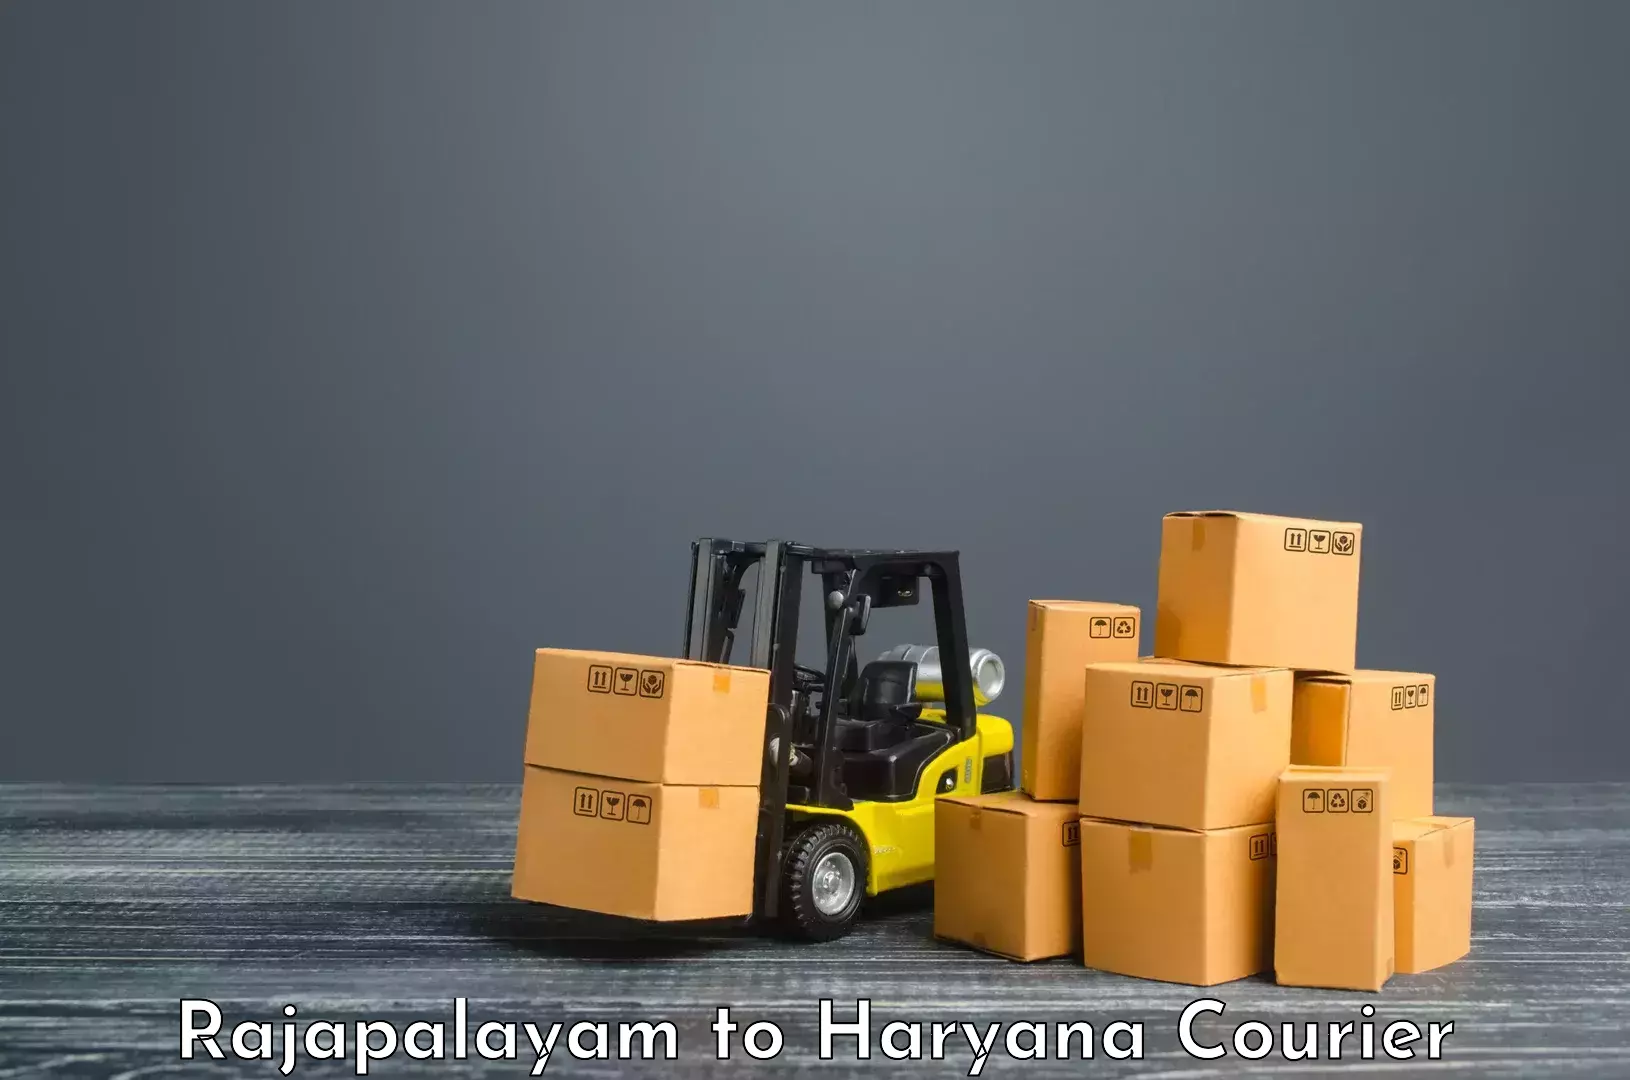 Express logistics service Rajapalayam to Sohna